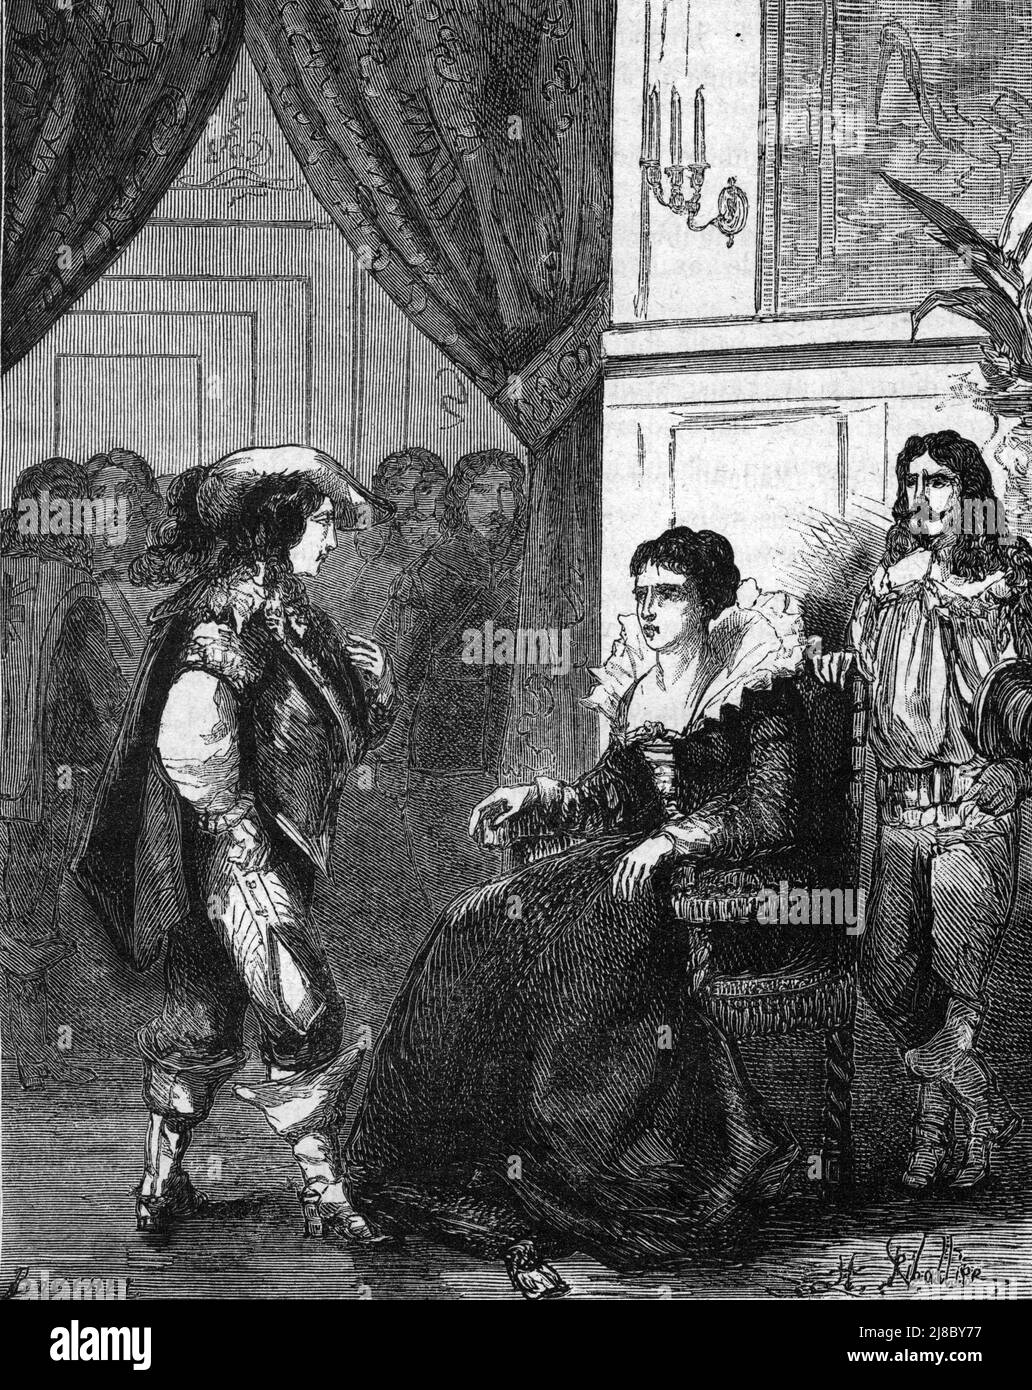 'Entrevue de la regente Marie de Médicis (1575-1642) avec son fils Louis XIII (1601-1643)' (Roi Louis XIII avec sa mère Marie de Médicis) Gravure tiree de 'les mystérieuses du grand monde' de Fulgence Girard Collection privee Banque D'Images